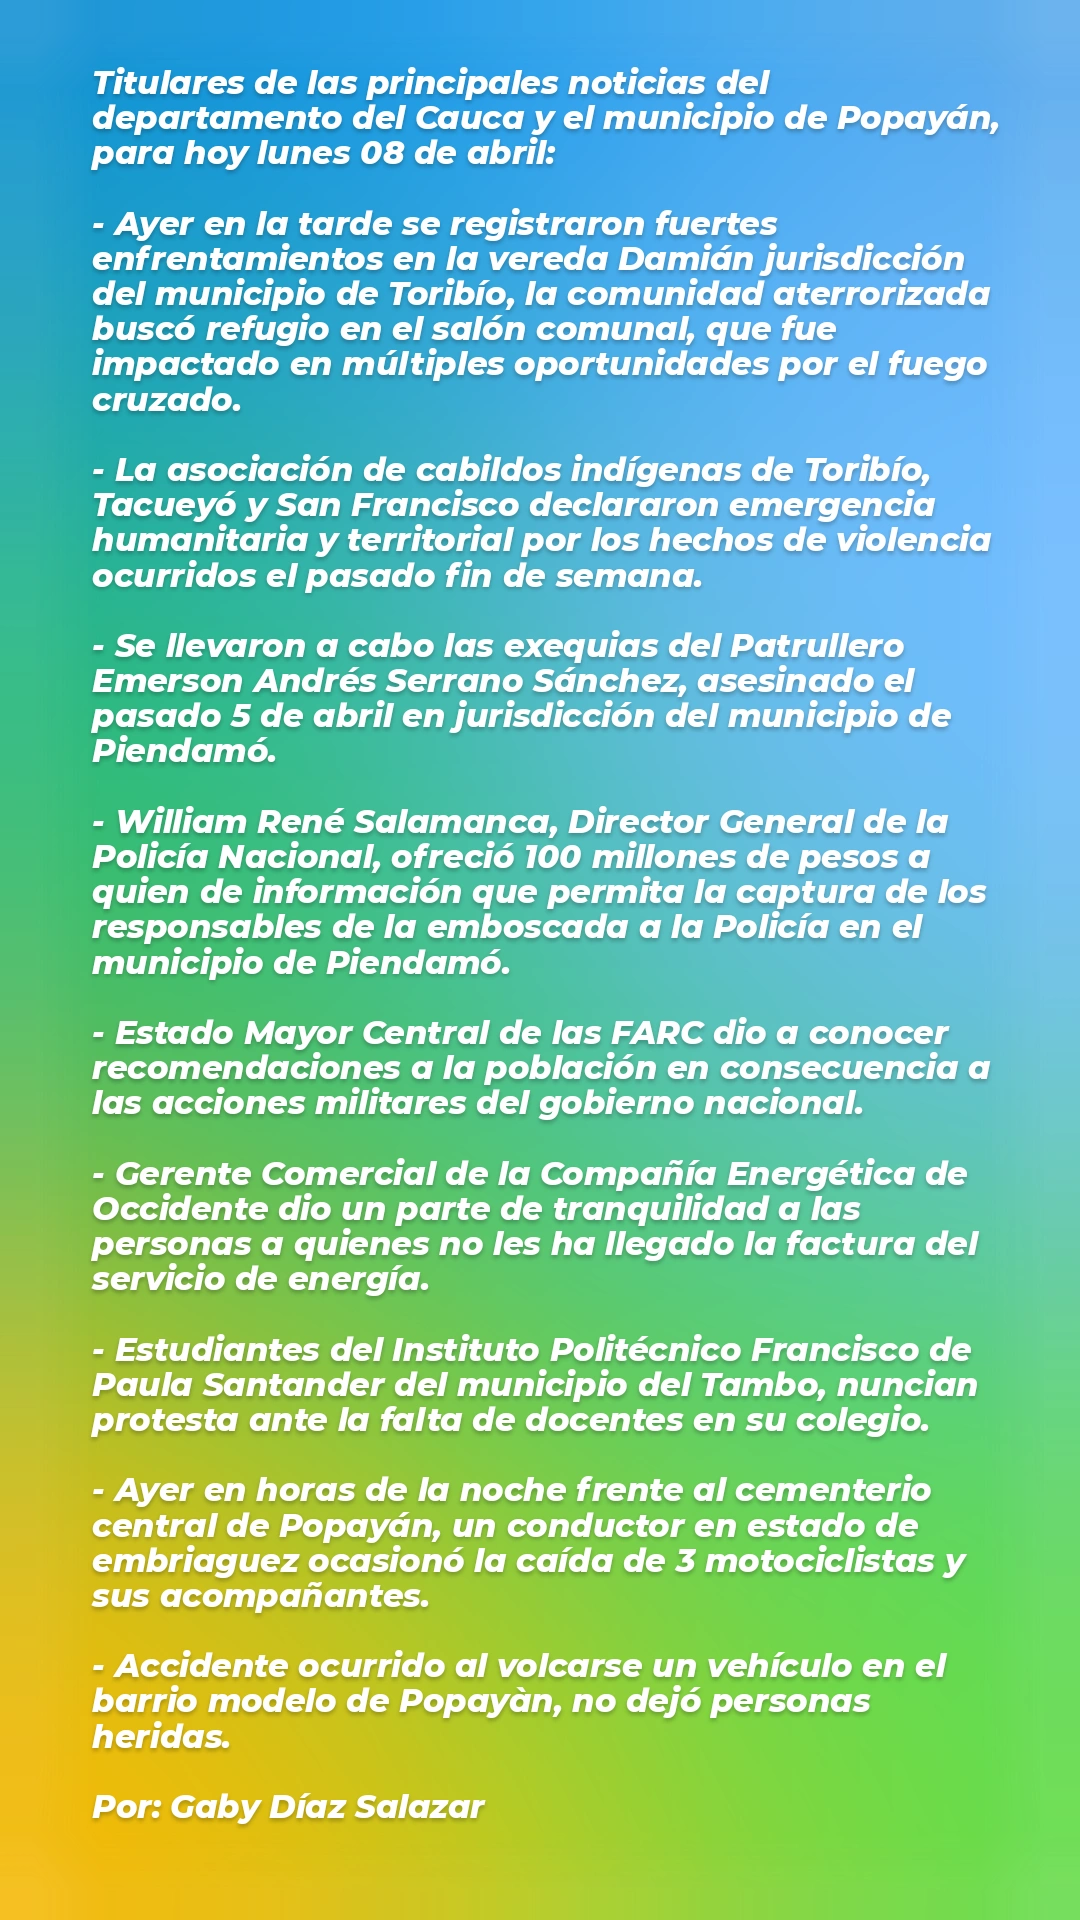 Principales noticias del departamento del Cauca y el municipio de Popayàn hoy 8 de abril.